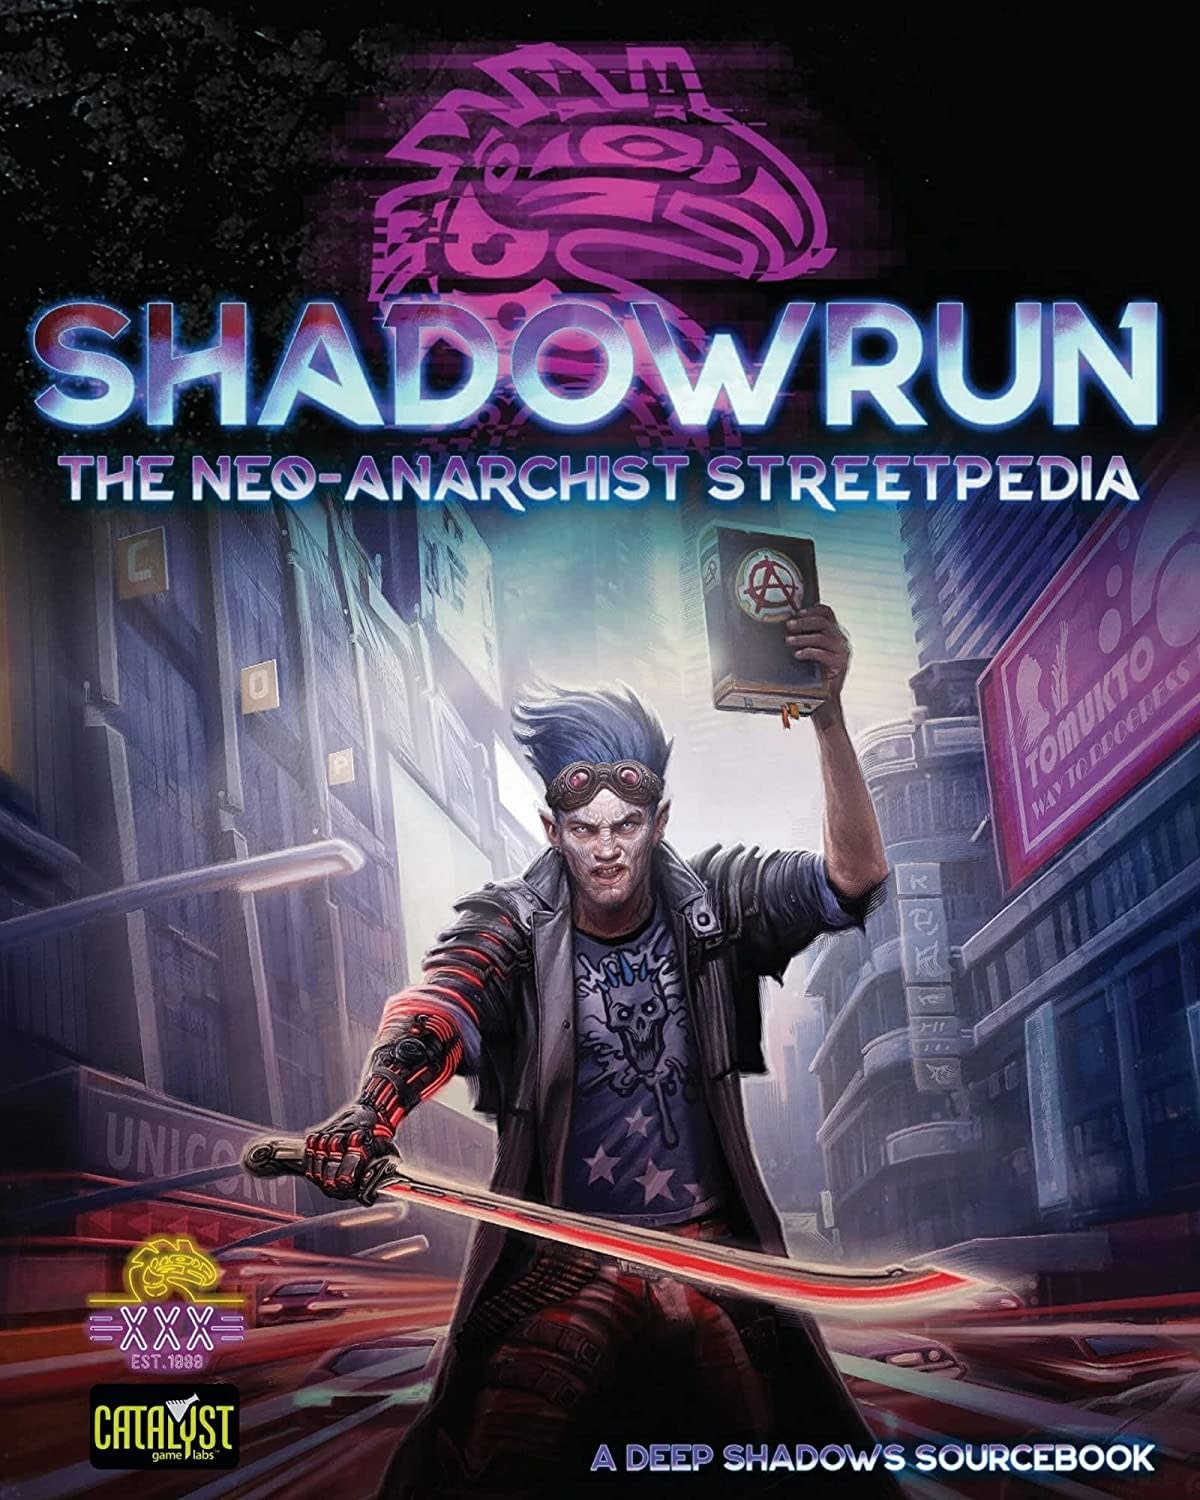 Shadowrun 6E RPG: Core Rulebook - Gamers-Corps